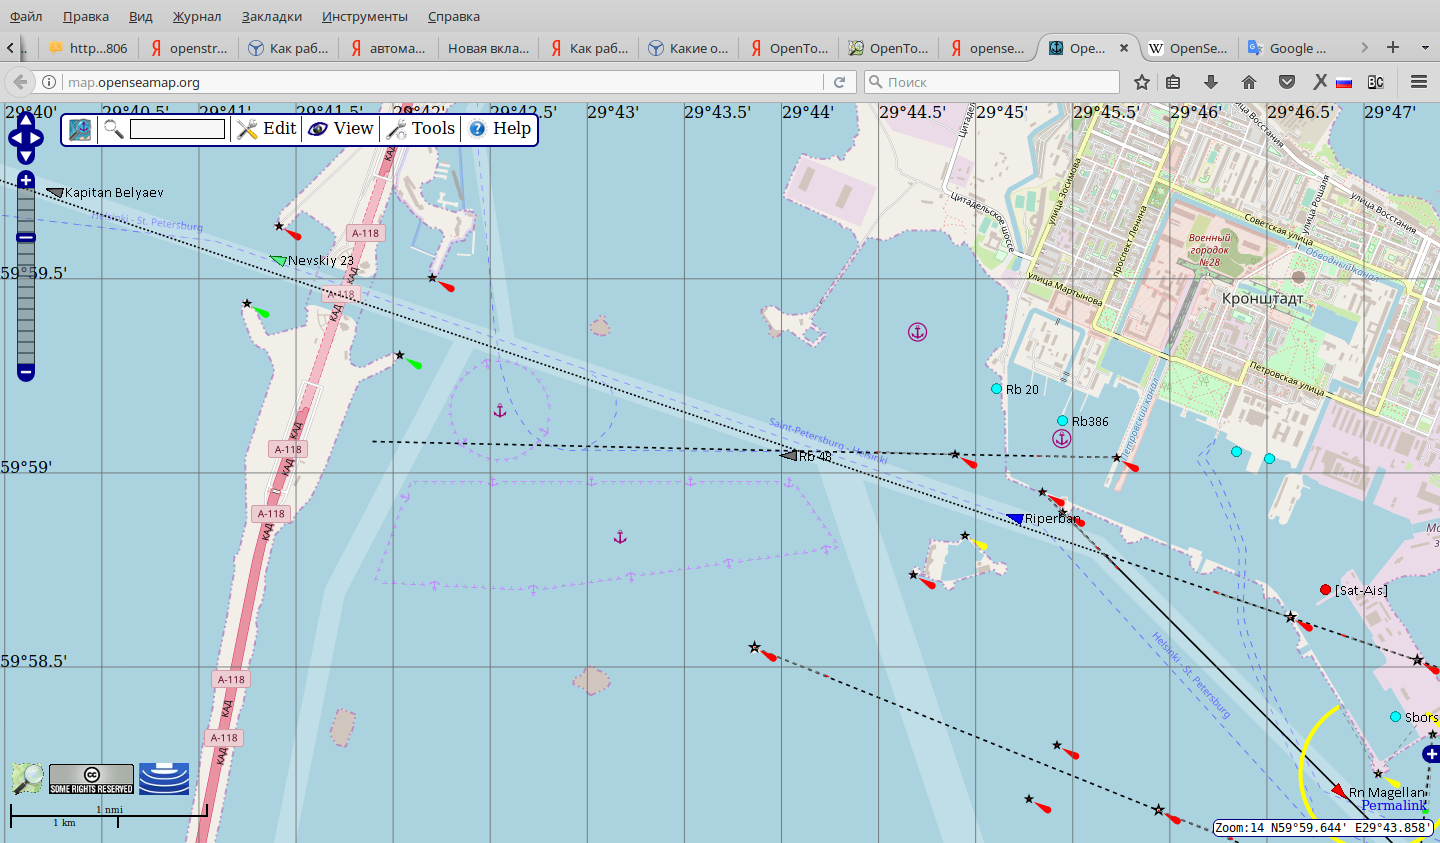 Аис карта судно. Определение места судна на карте. Движение кораблей по карте в реальном времени.